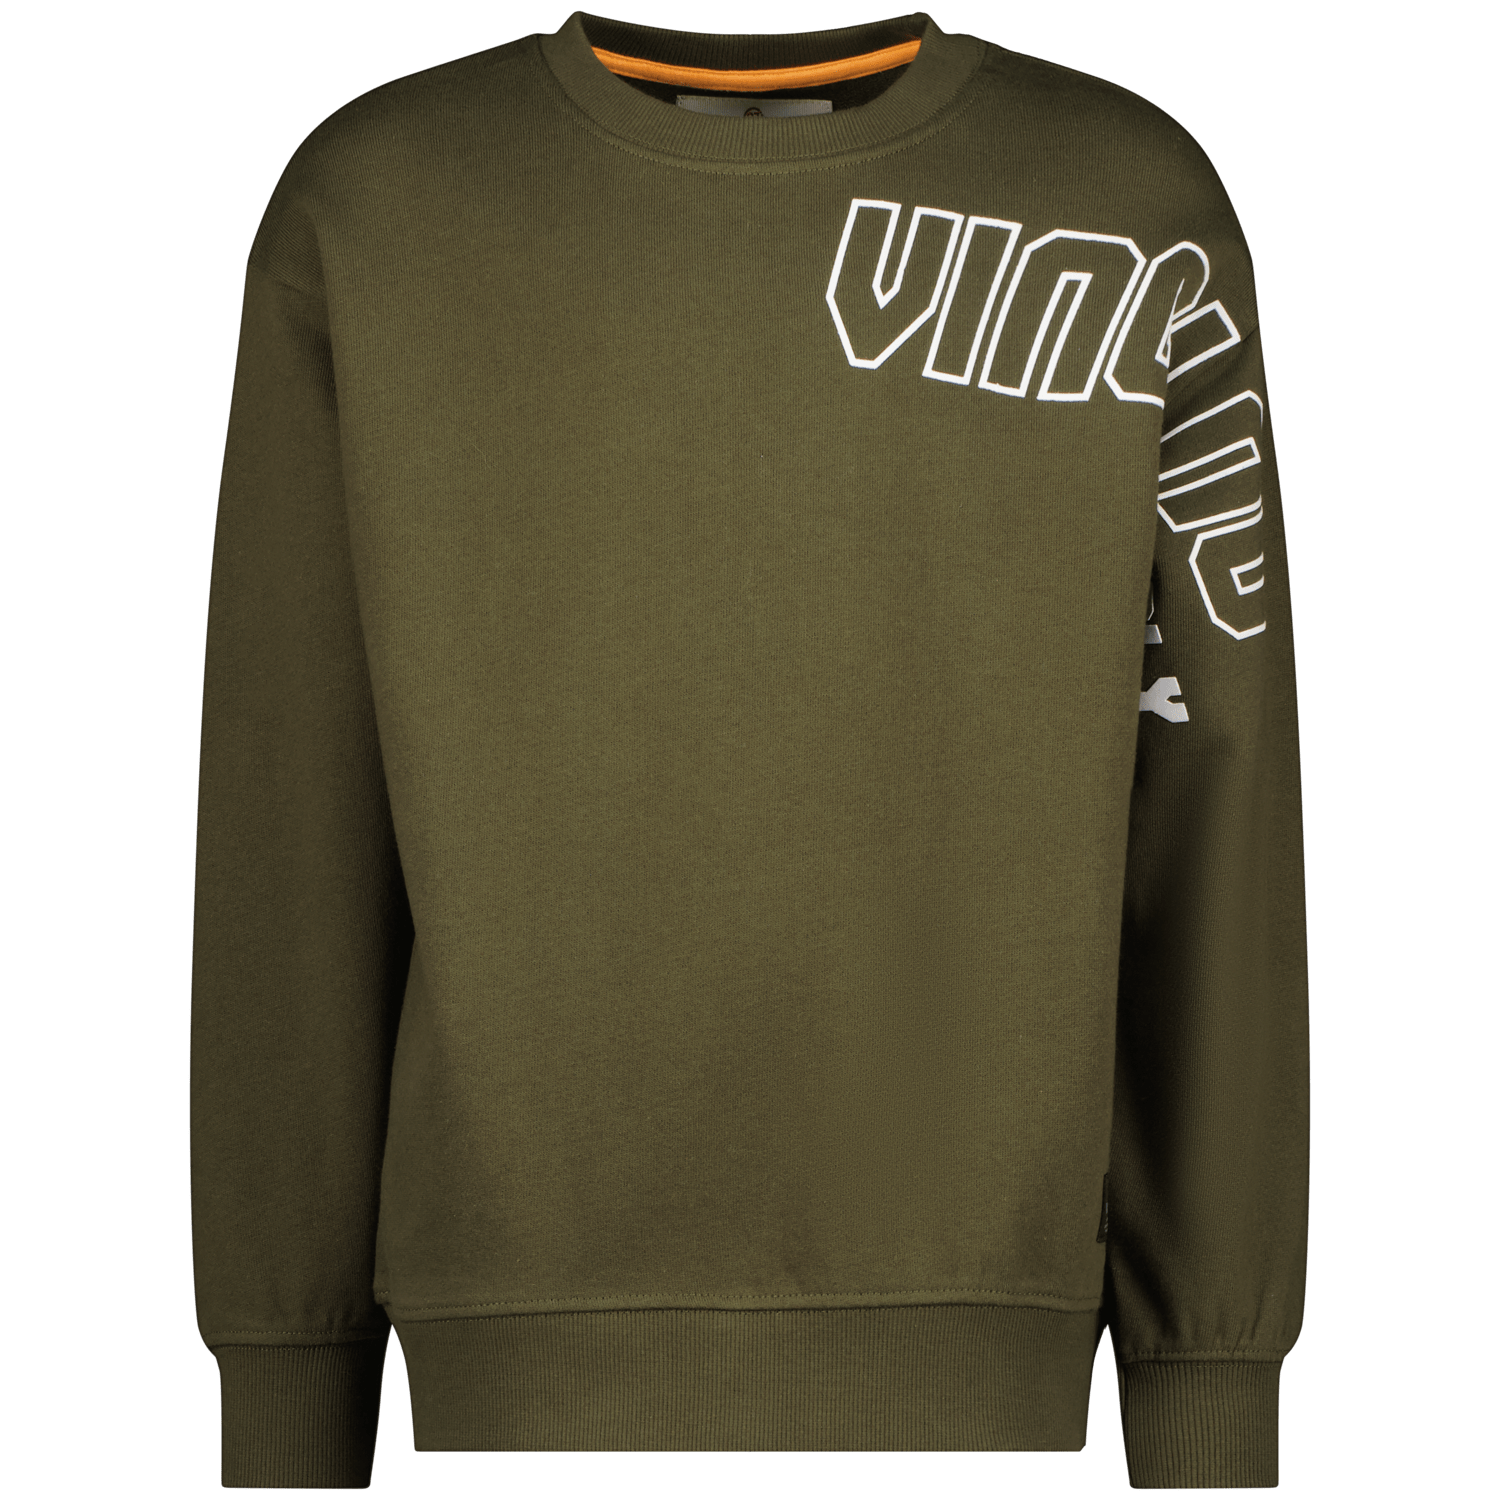 Sweatshirt Maurice product